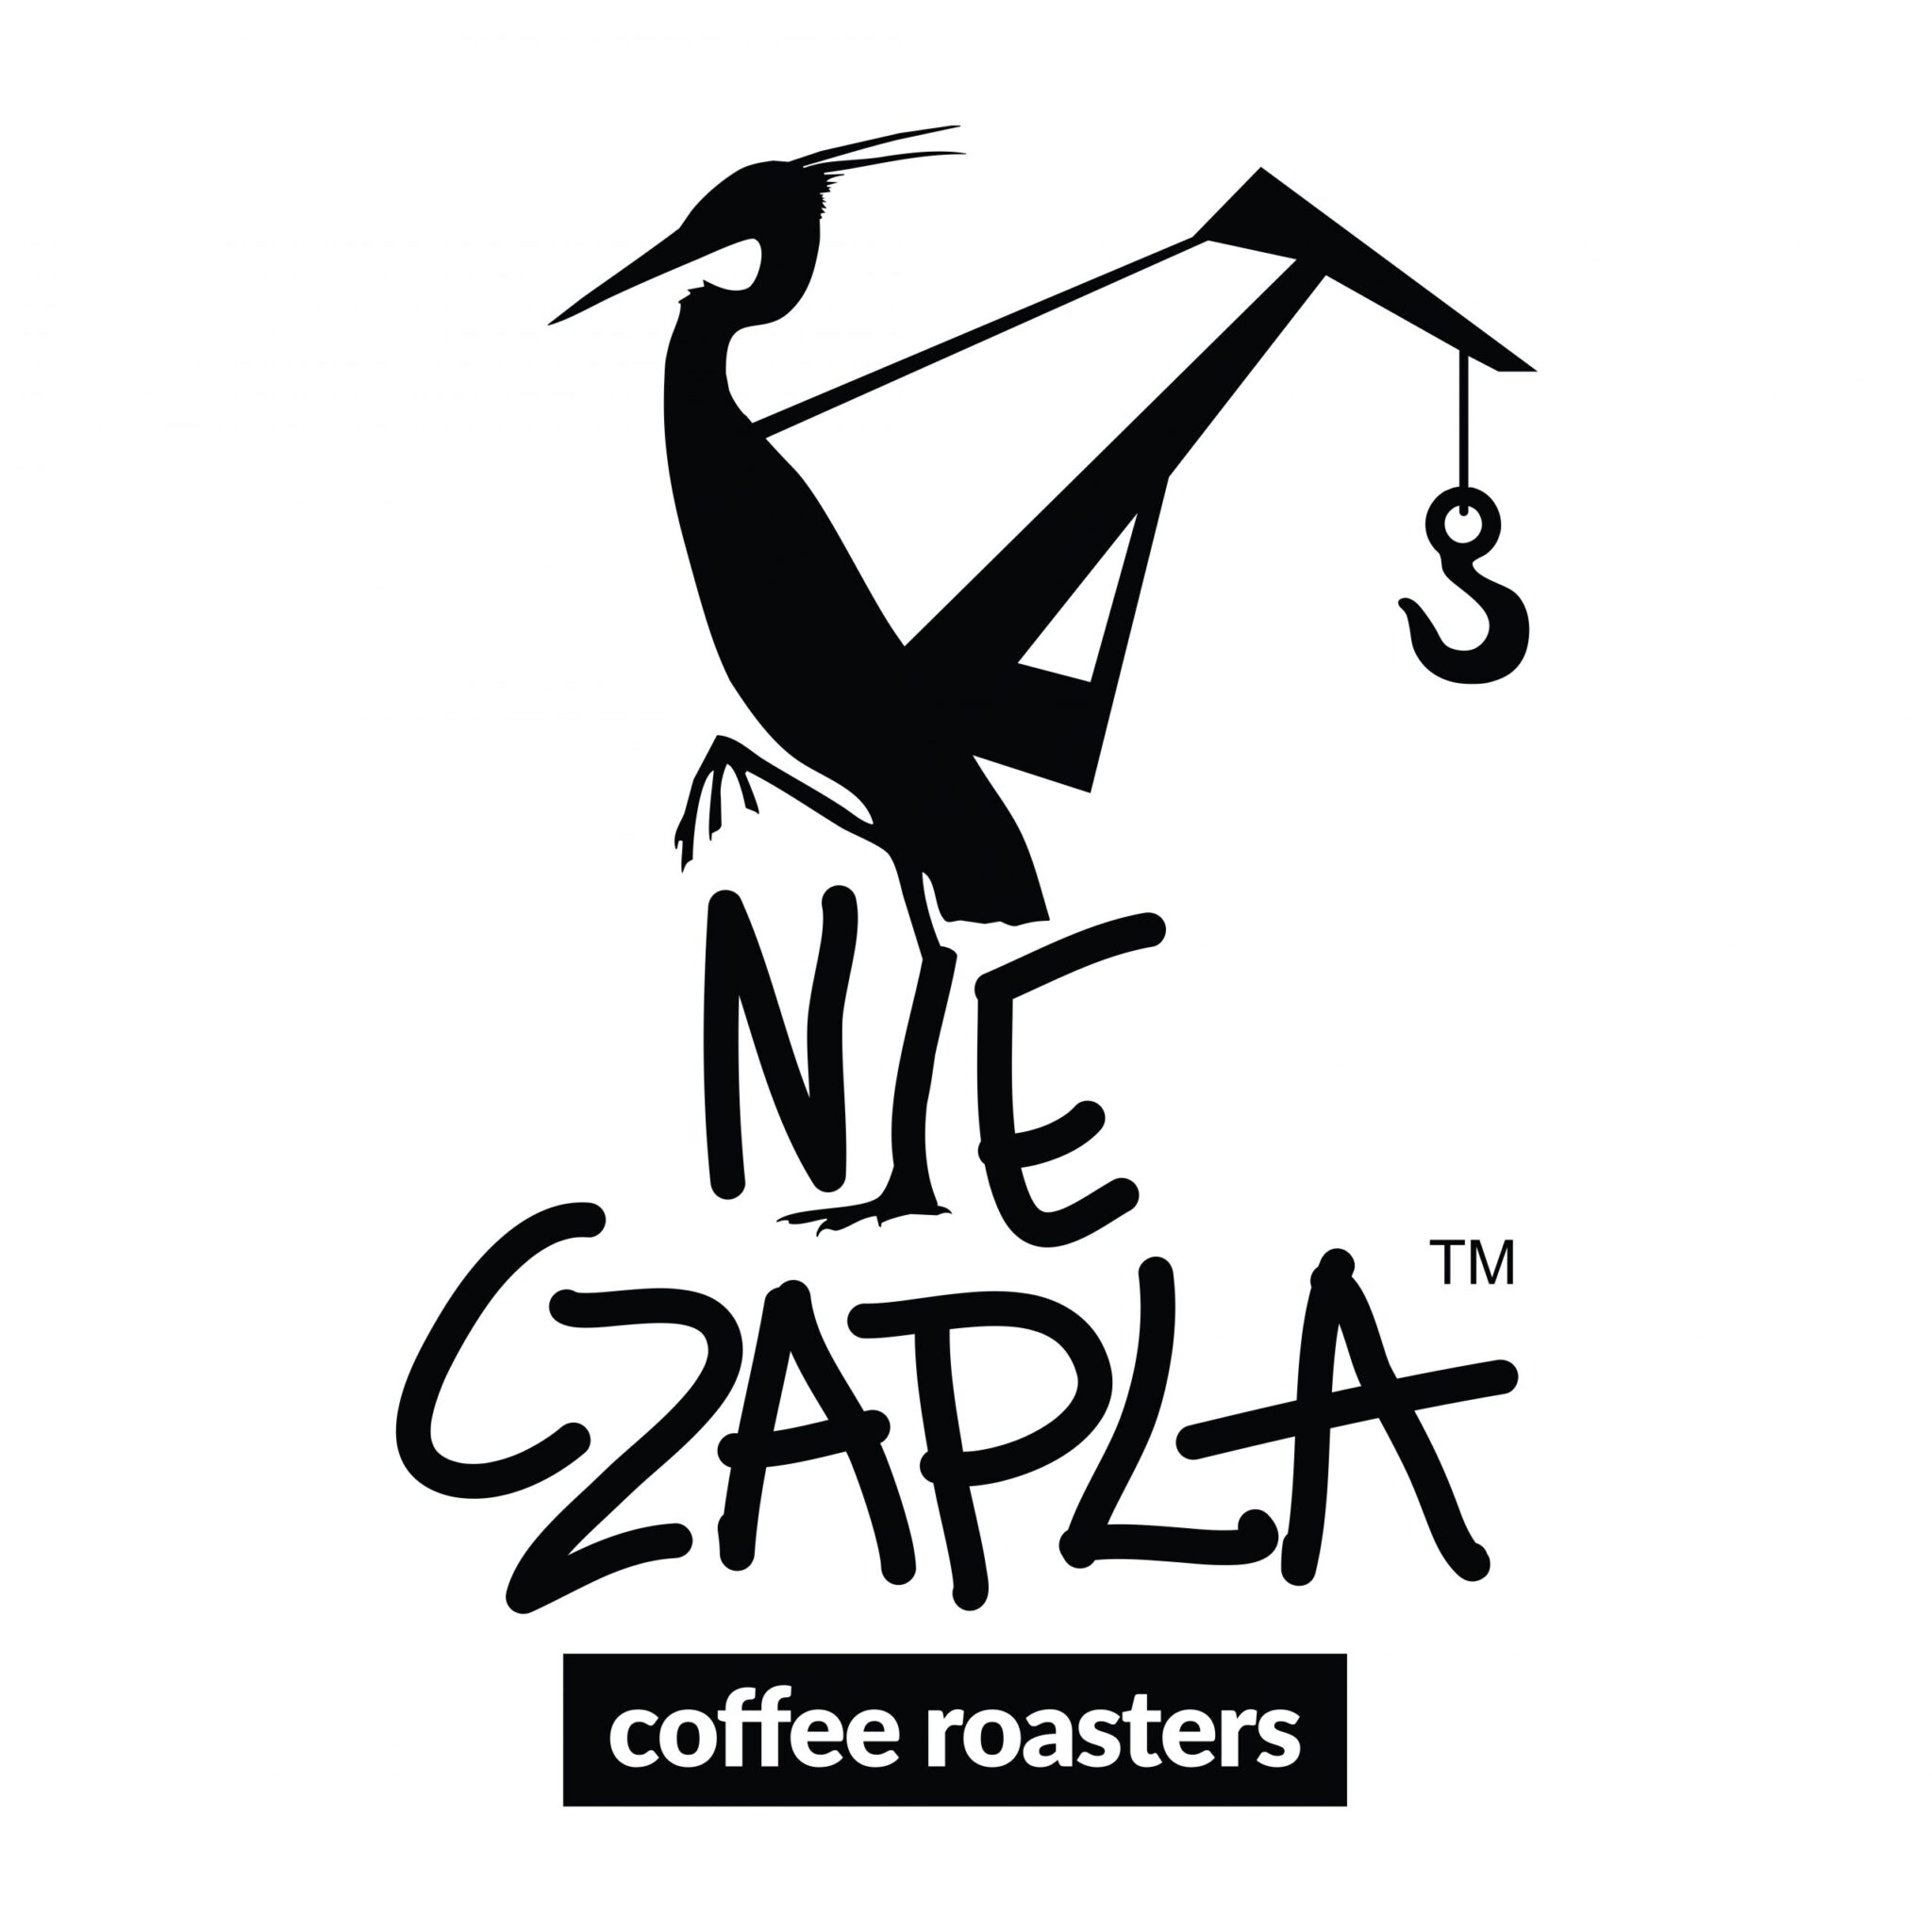 Logo Nieczapla